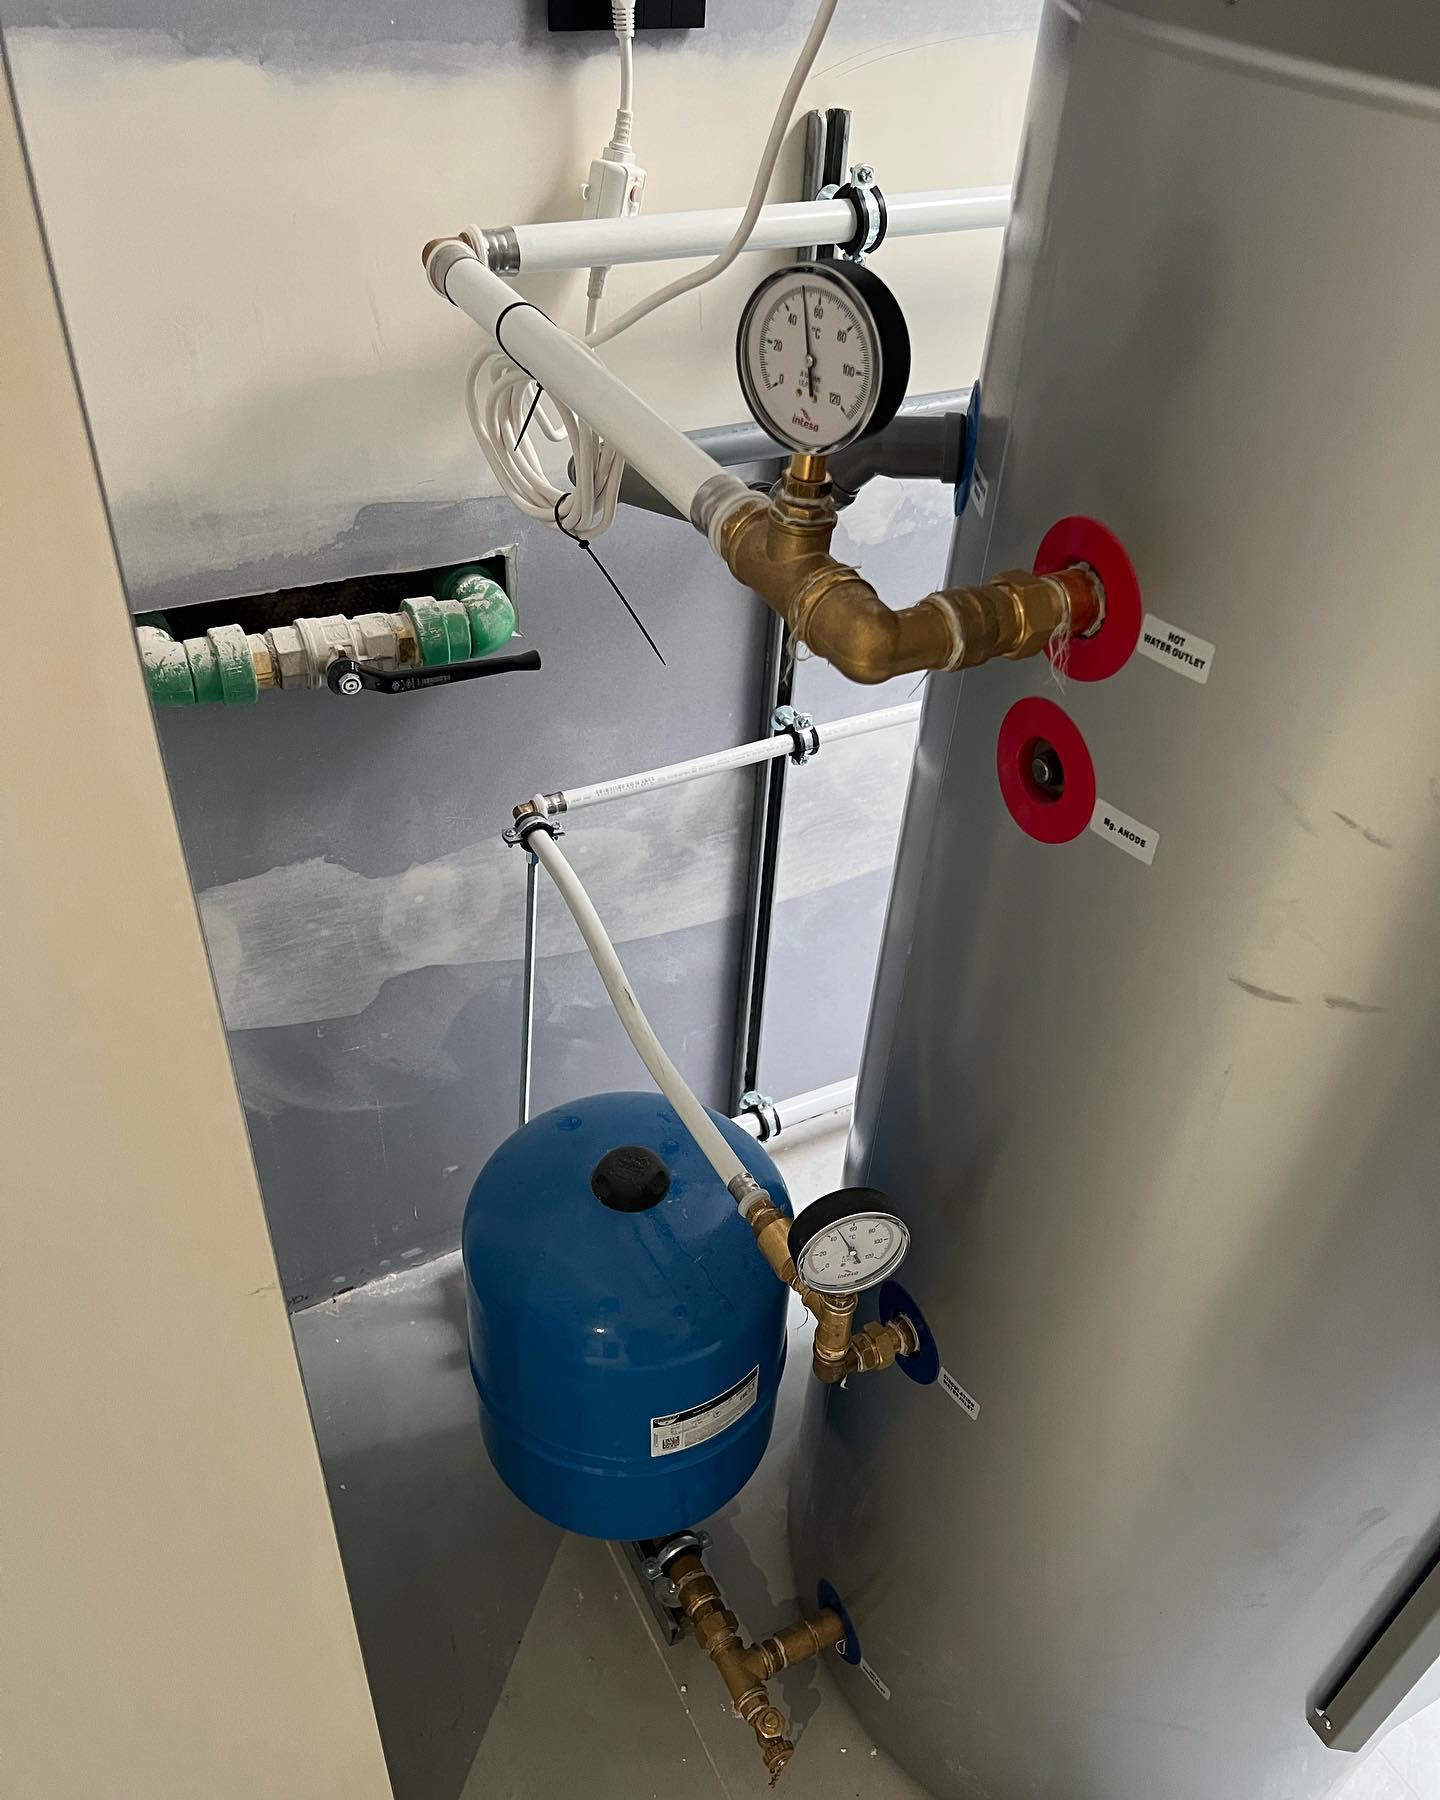 Produzione di acqua calda con pompa di ricircolo impiantiidr